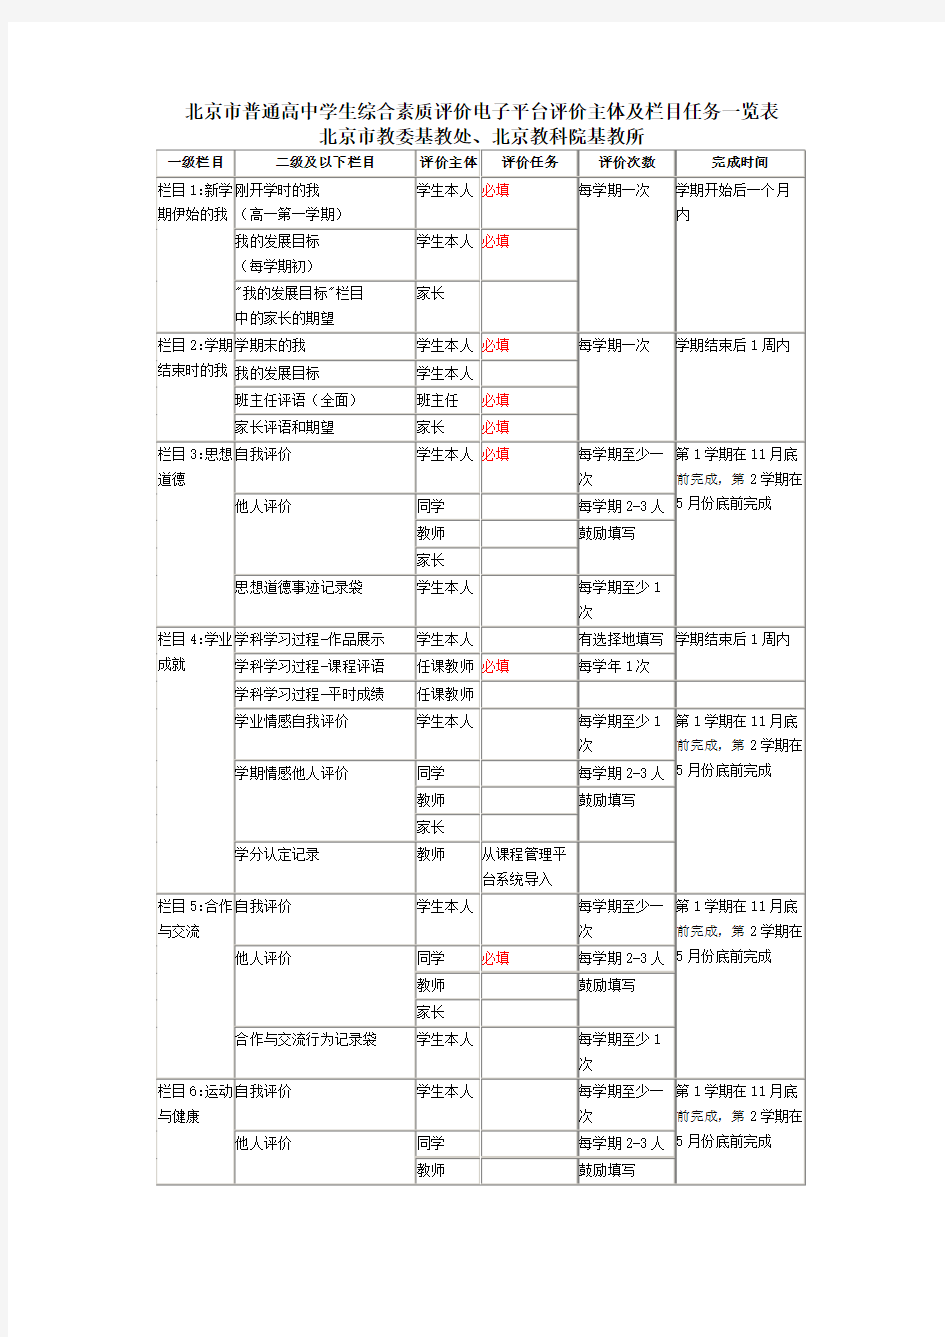 北京市普通高中学生综合素质评价电子平台填写要求